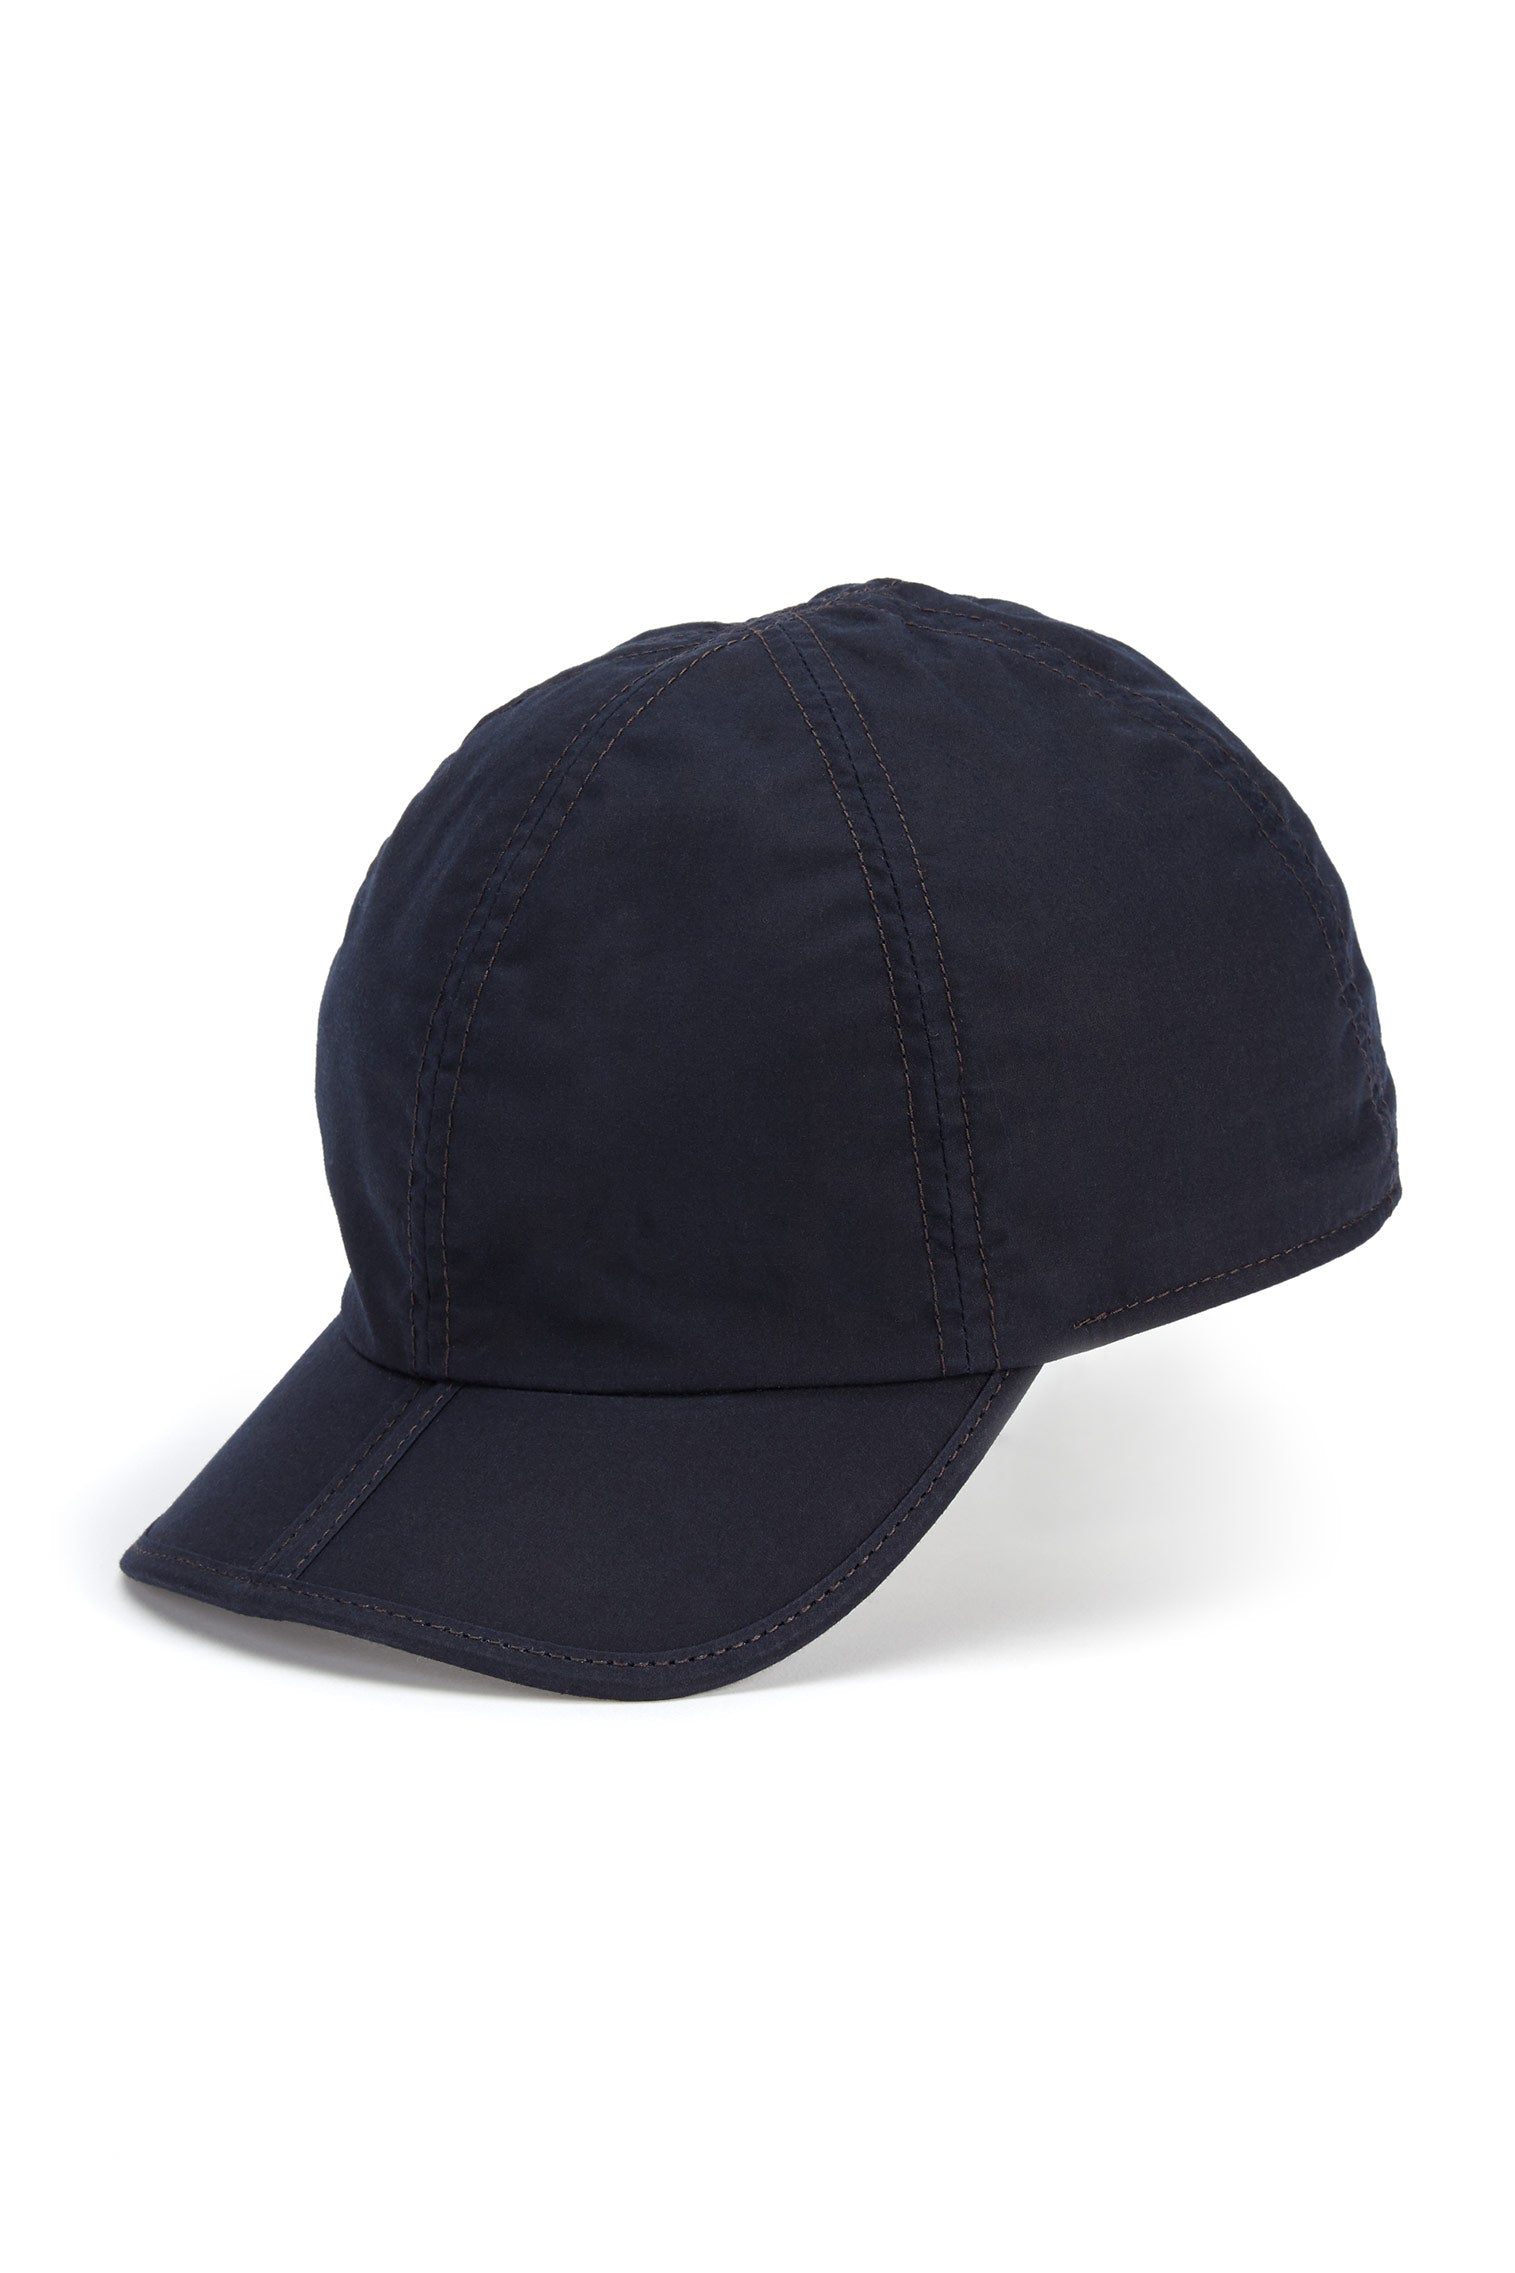 Folding Wax Baseball Cap - All Ready to Wear - Lock & Co. Hatters London UK